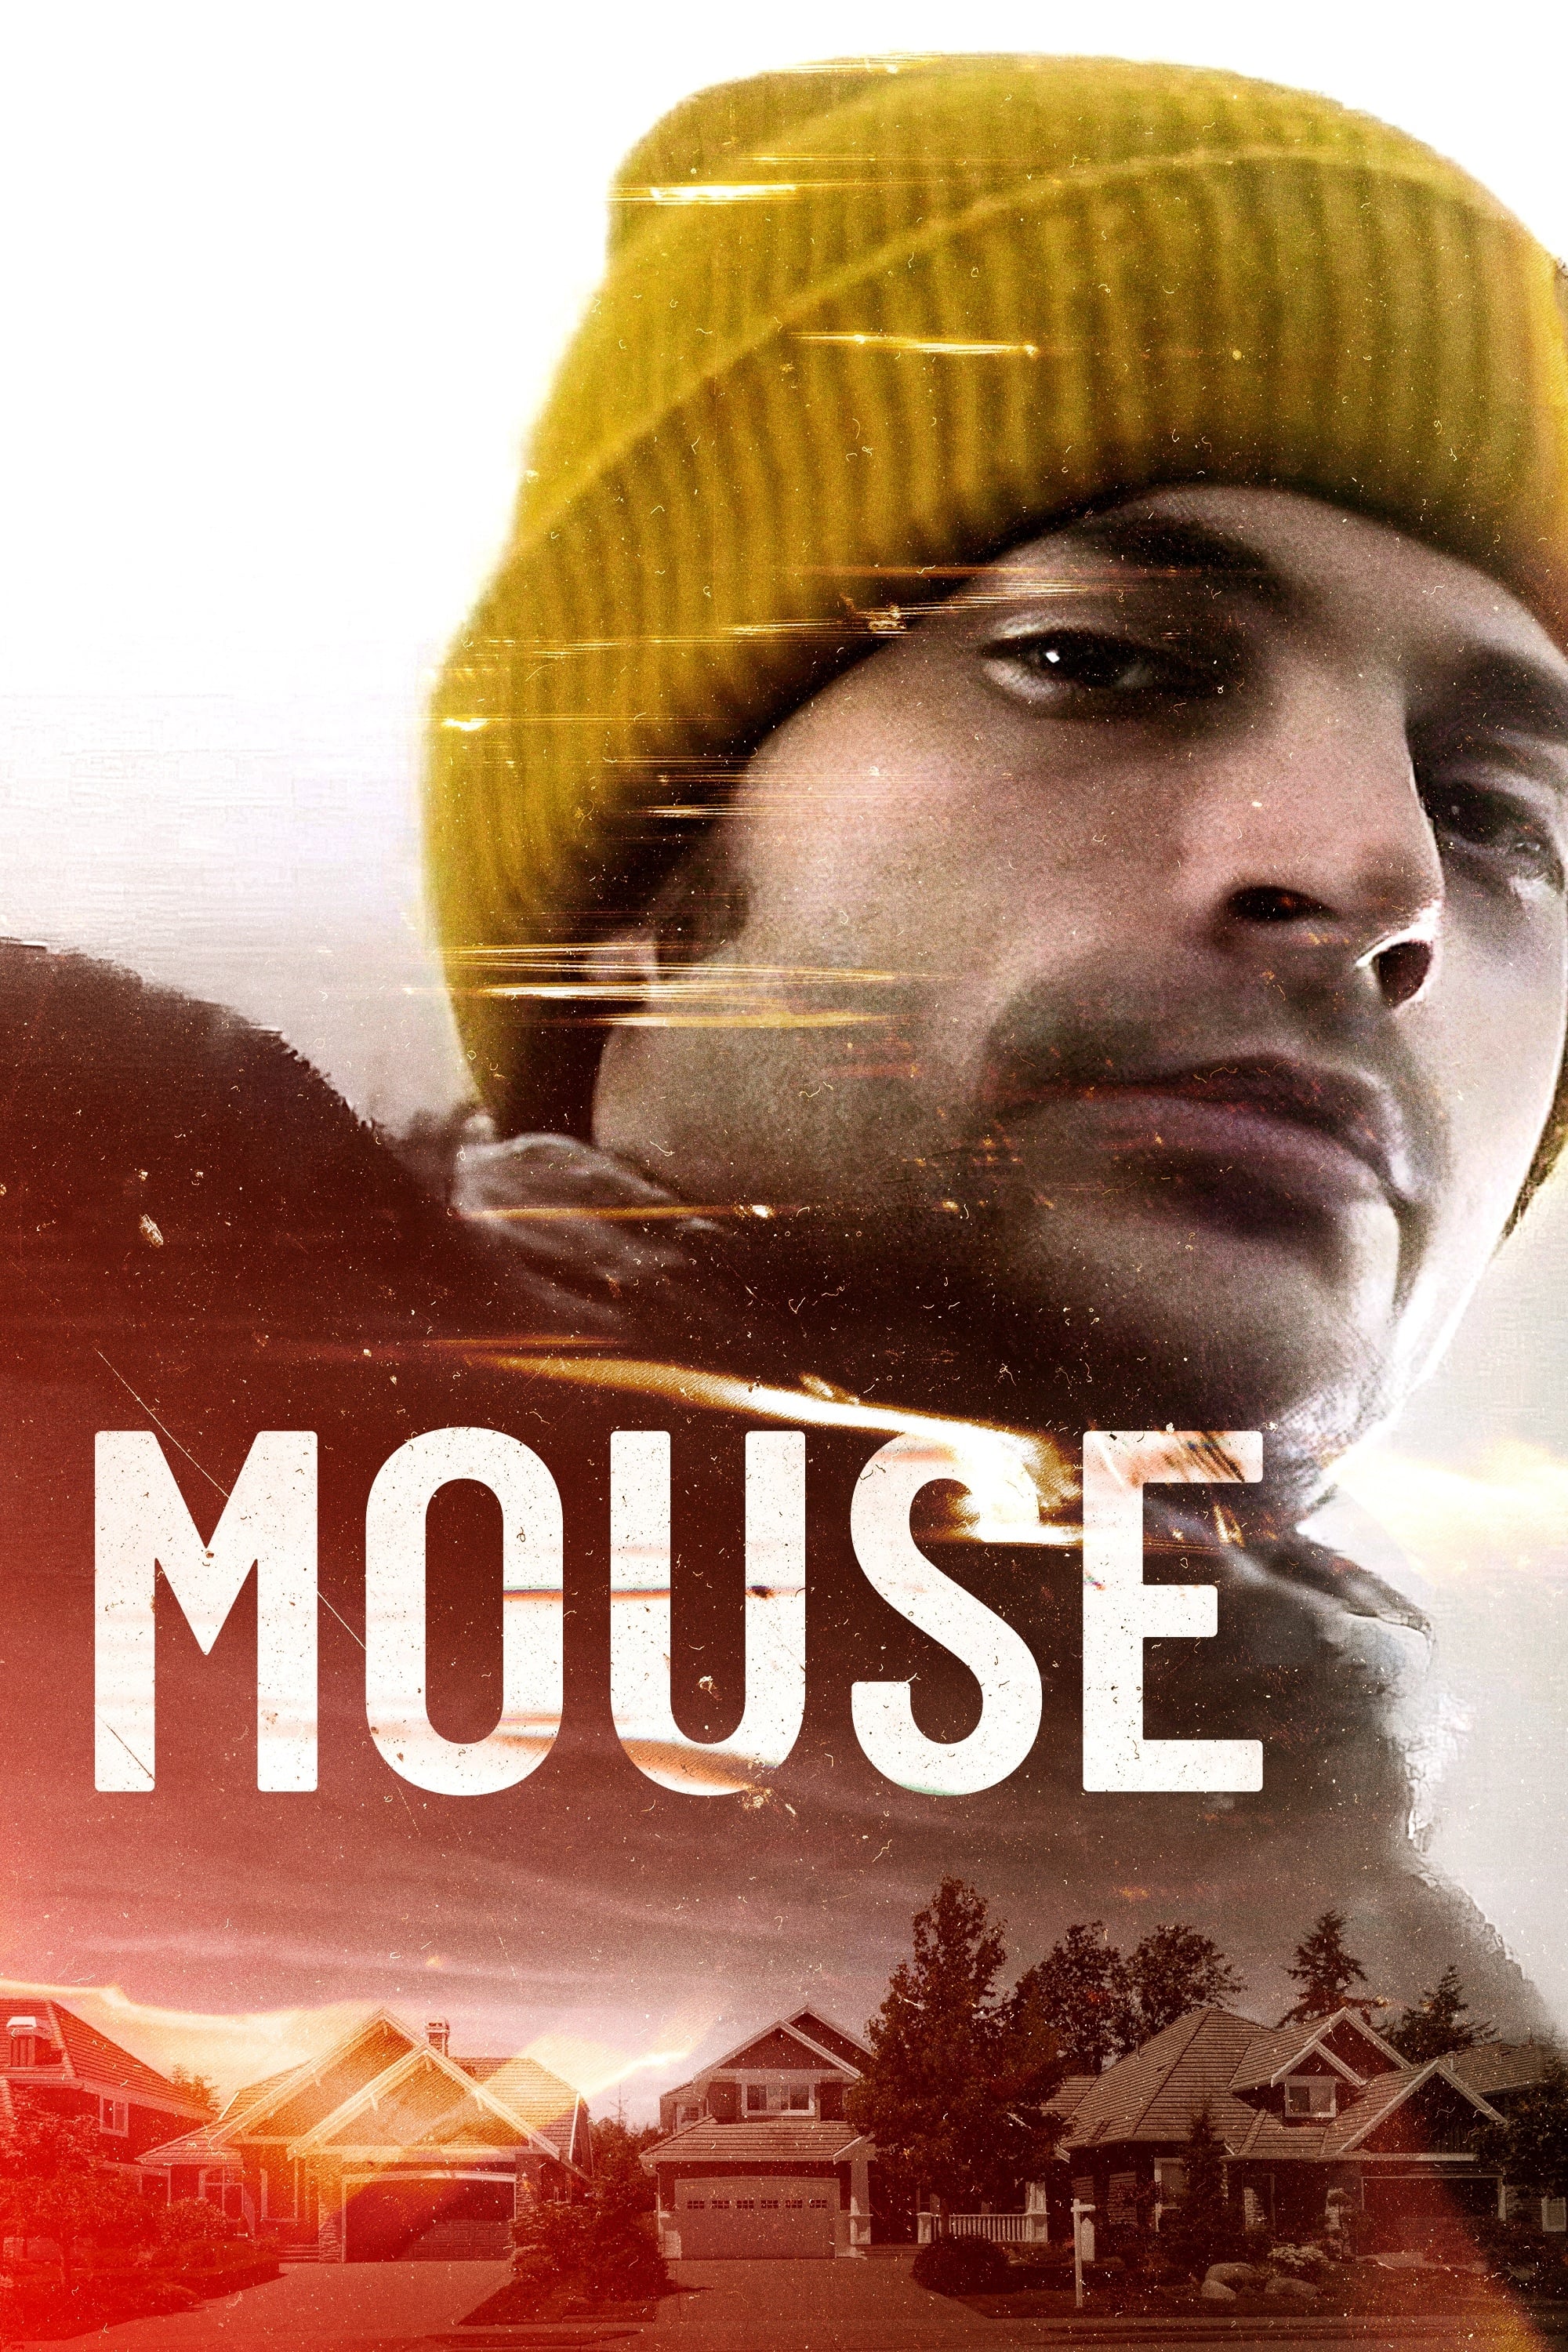 Mouse (2021) poster - Allmovieland.com